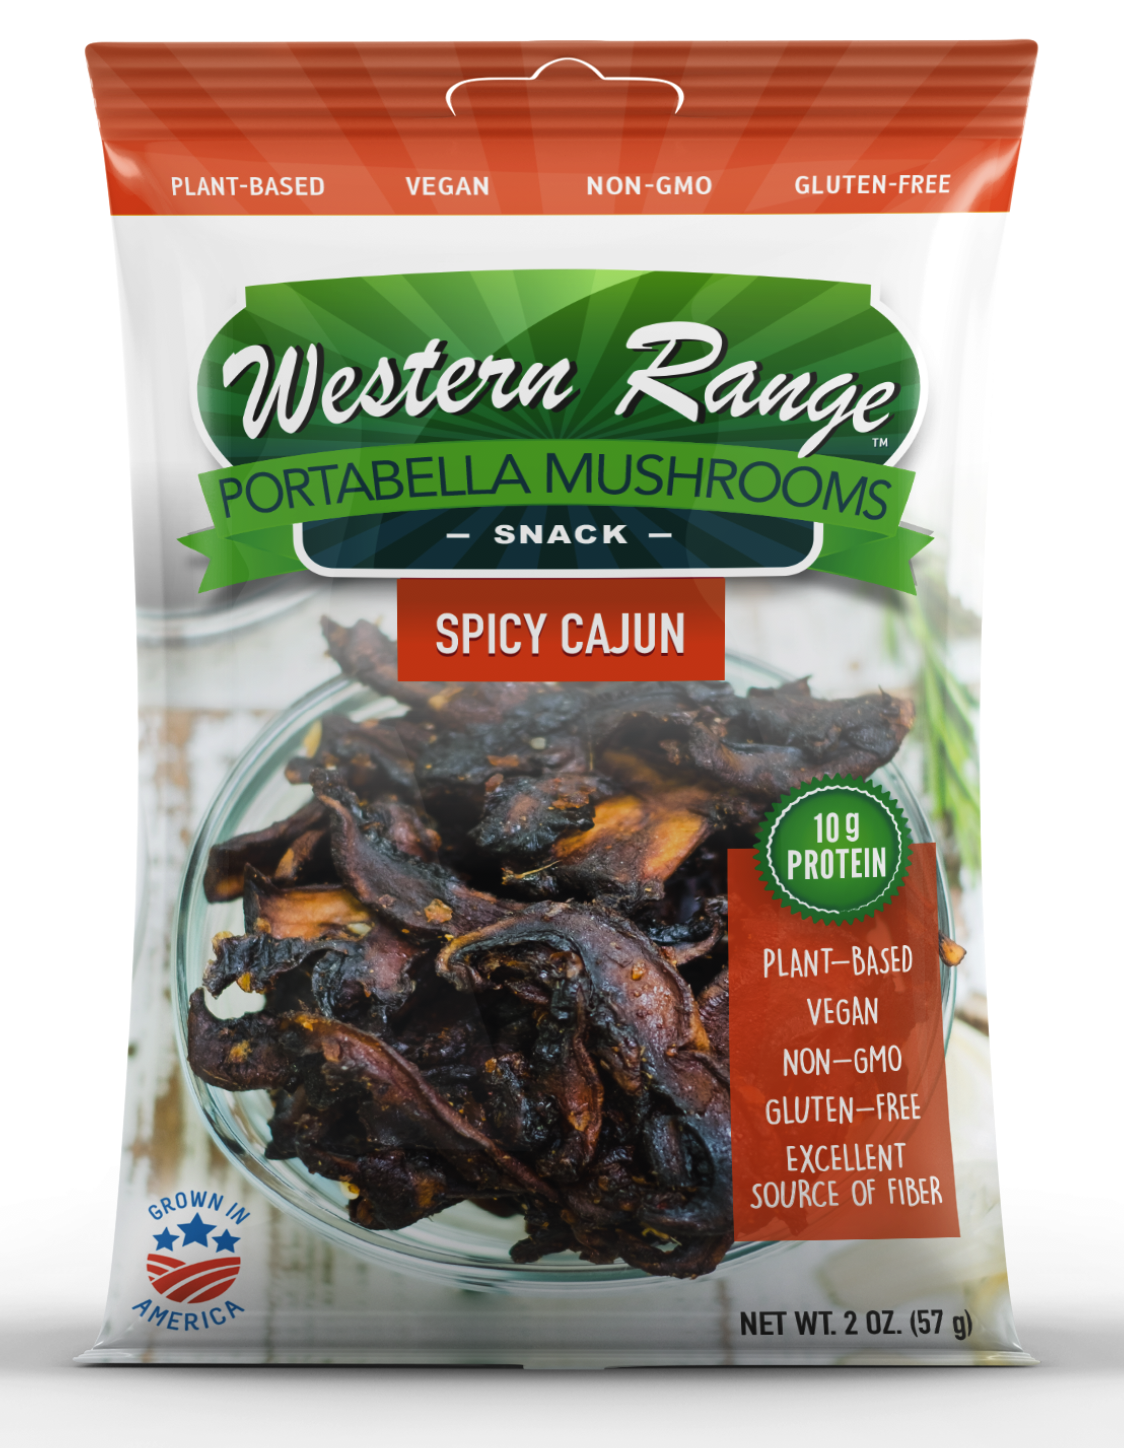 Western Range Portabella Mushroom Snack - Spicy Cajun 12 units per case 2.0 oz